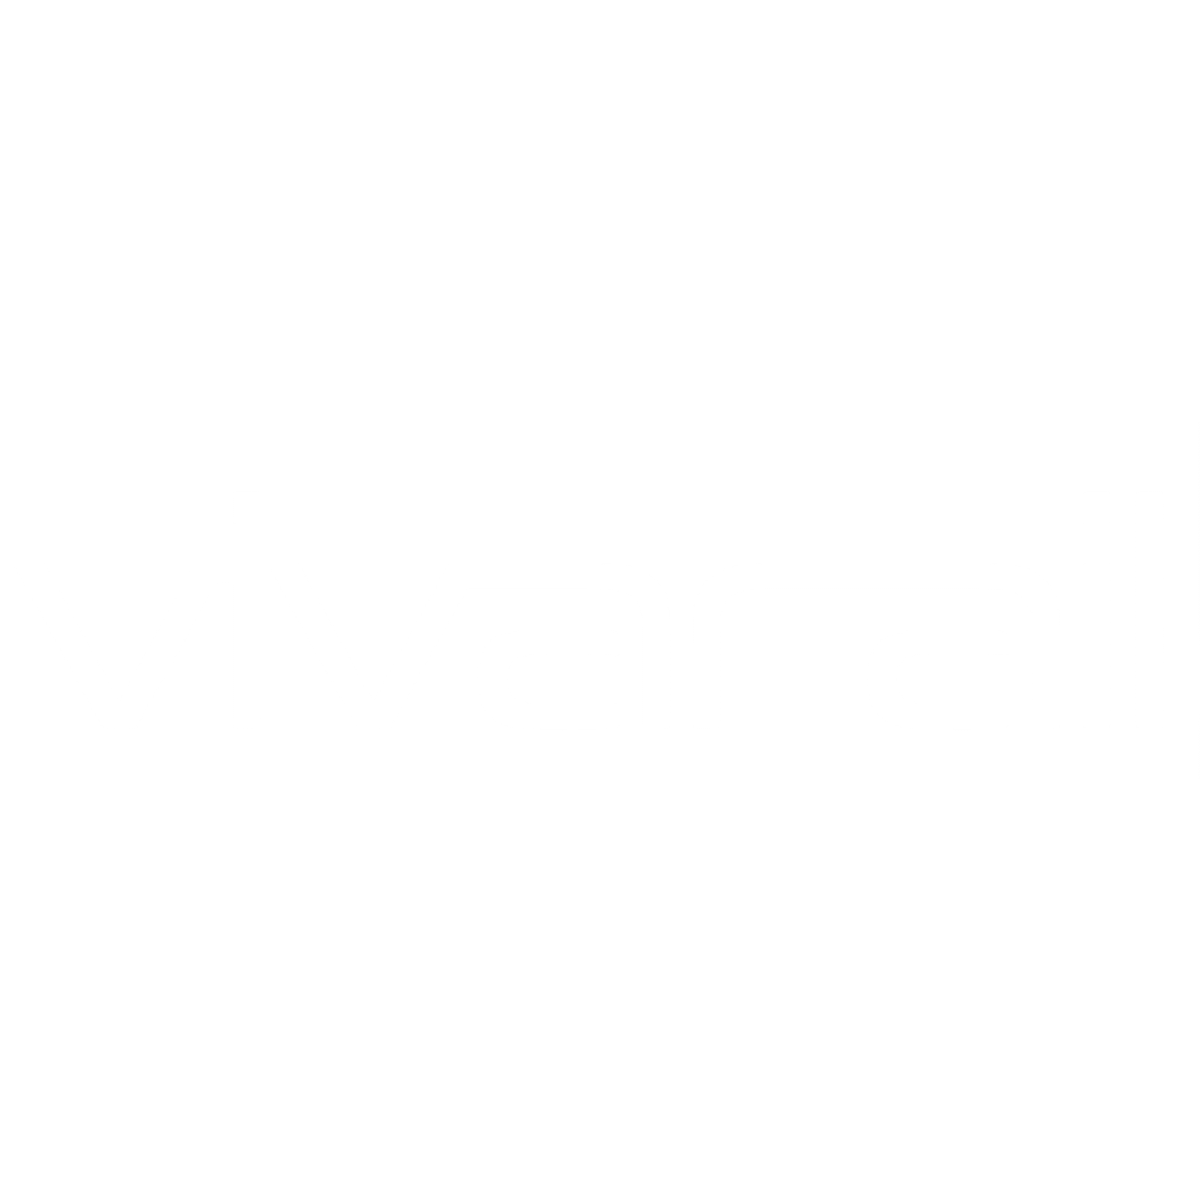 vivarail-copy.png